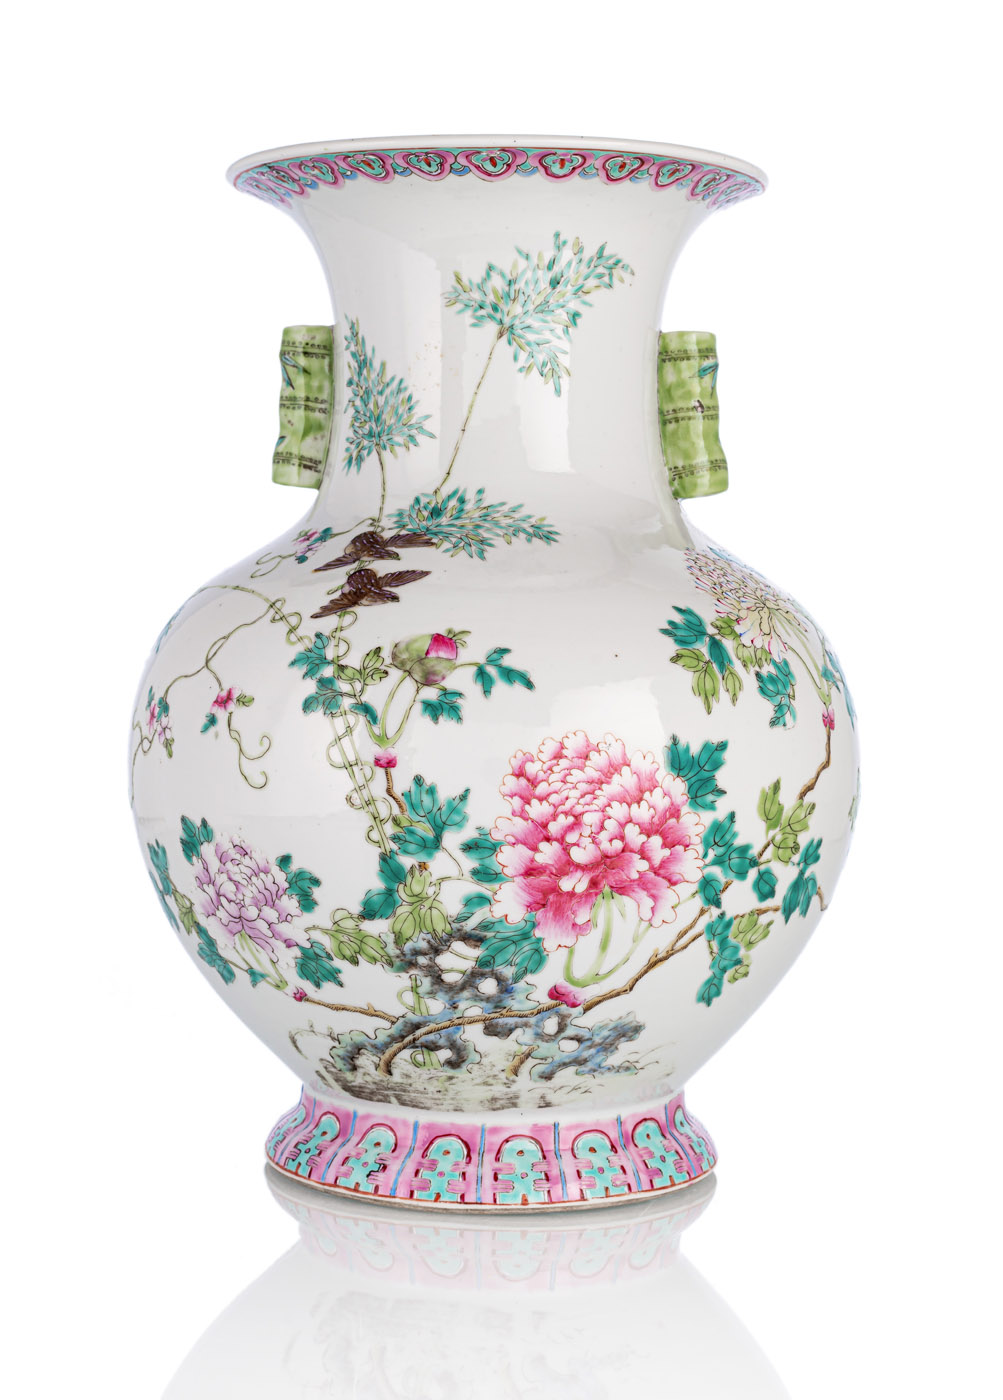 <b>Gebauchte Porzellanvase mit bambusförmigen Handhaben und floralem 'Famille rose'-Dekor</b>